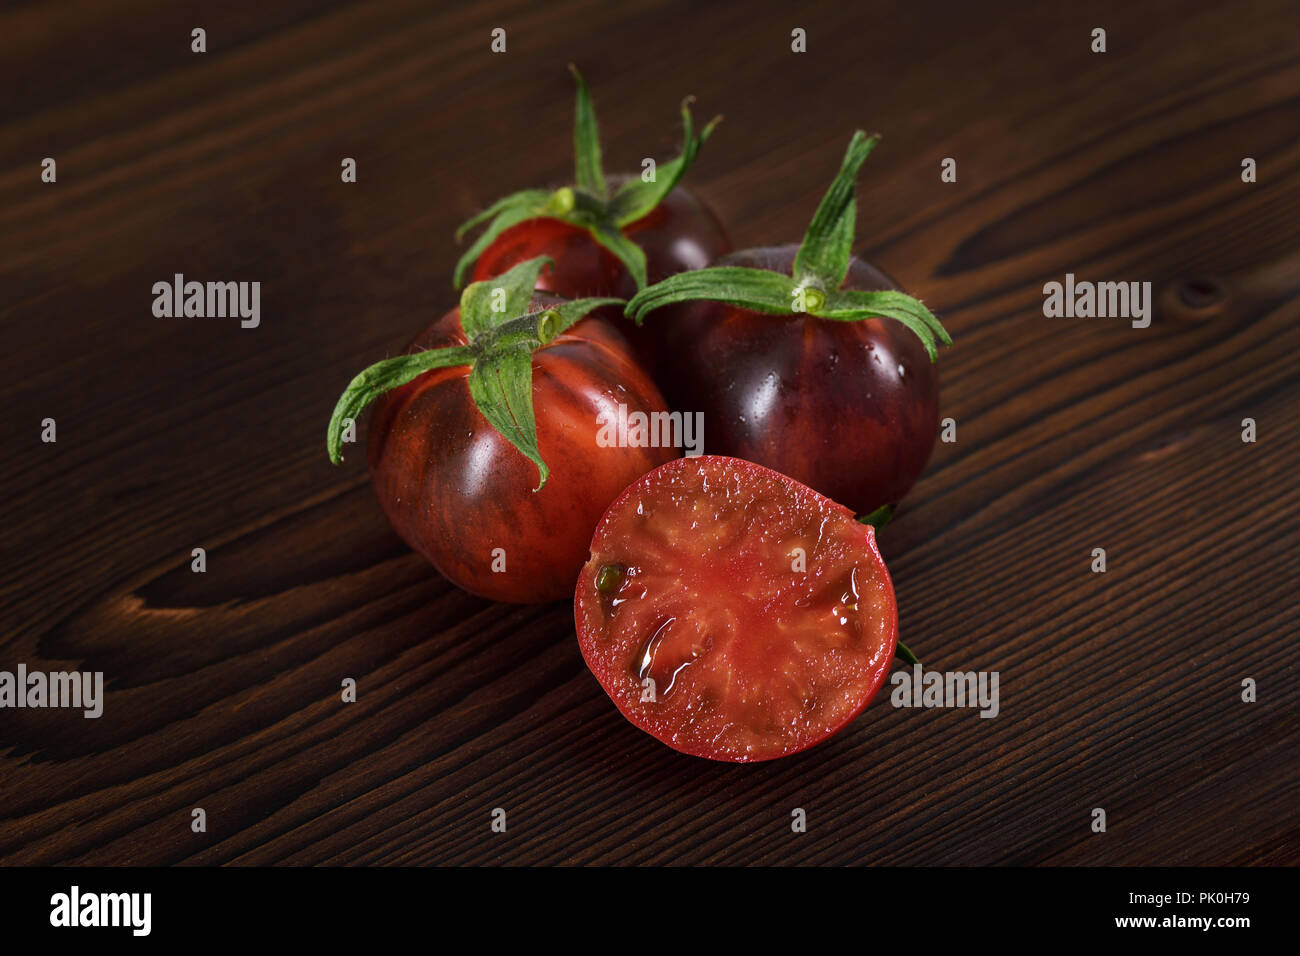 Indigo Rose tomates orgánicos con color rojo profundo y rico sabor, anti-cáncer, ricos en antioxidantes y antocianinas. Todavía la vida artística en la oscuridad woo Foto de stock